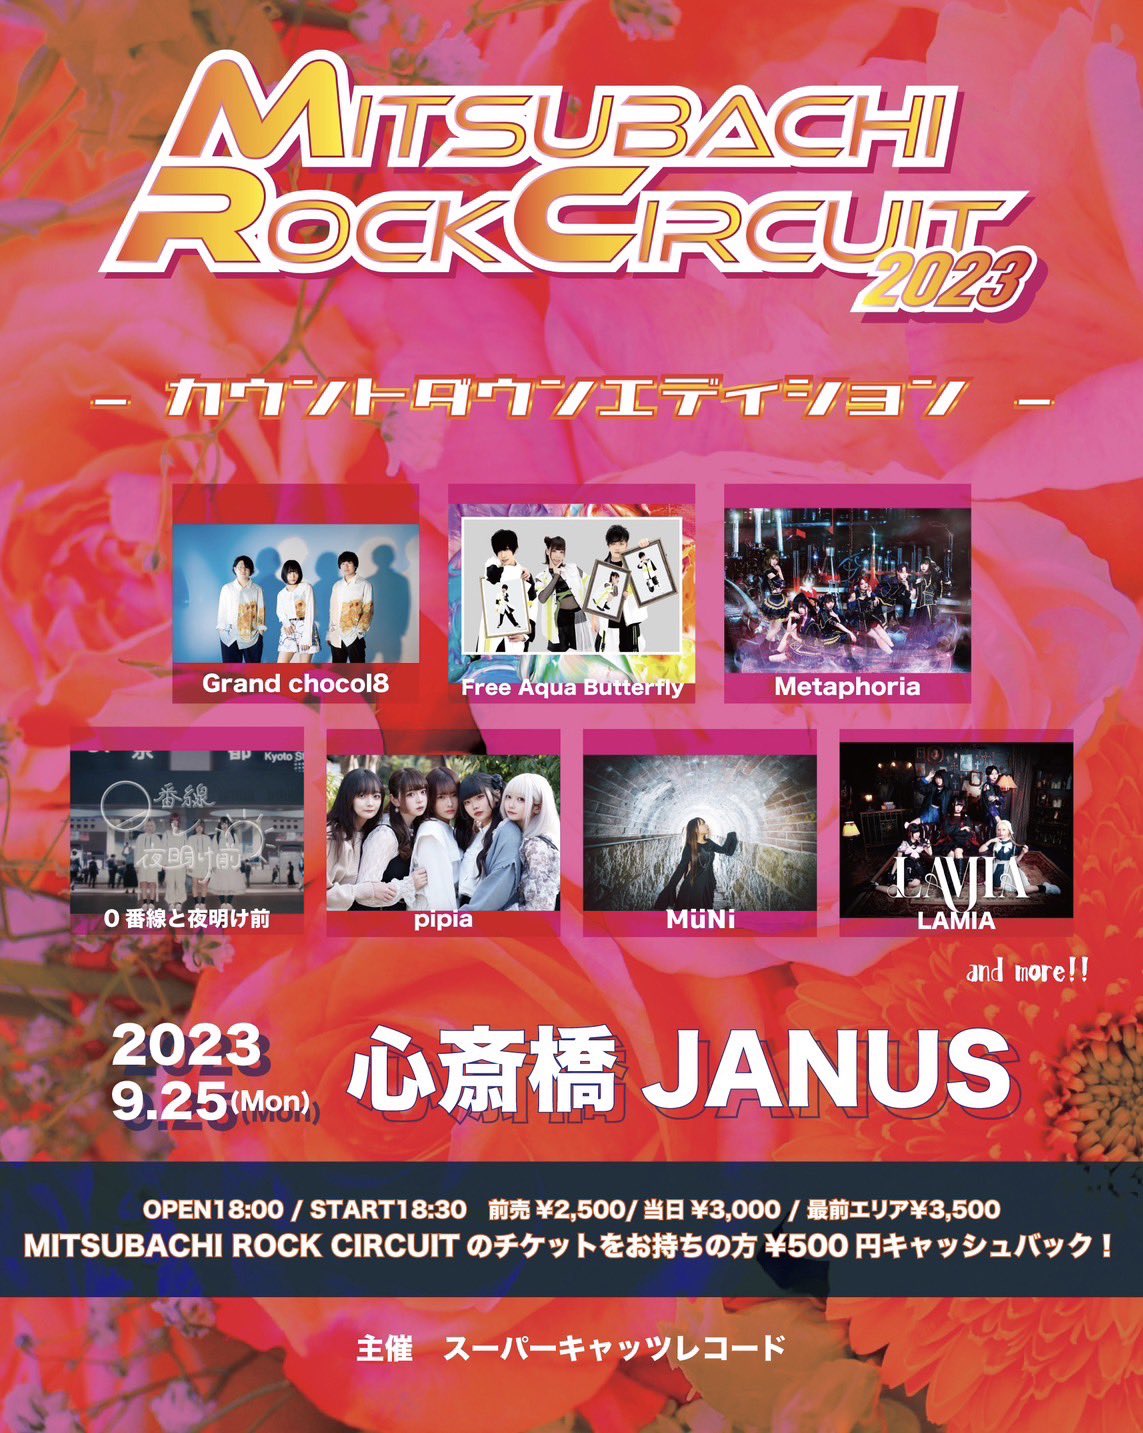 「MITSUBACHI ROCK CIRCUIT2023 カウントダウンエディション」